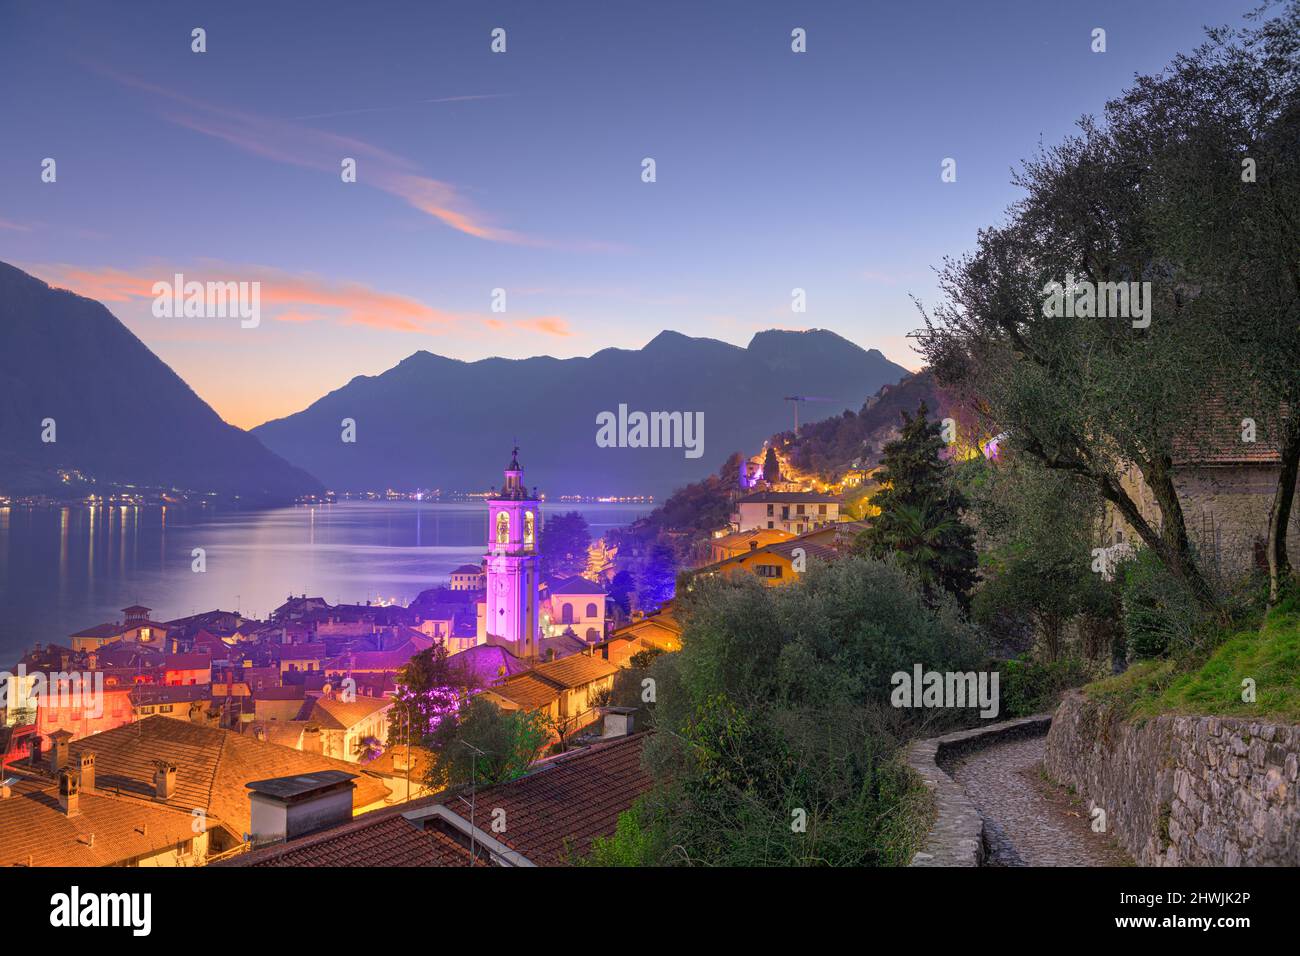 Sala Comacina, Como, Italy small town on Lake Como at dusk. Stock Photo